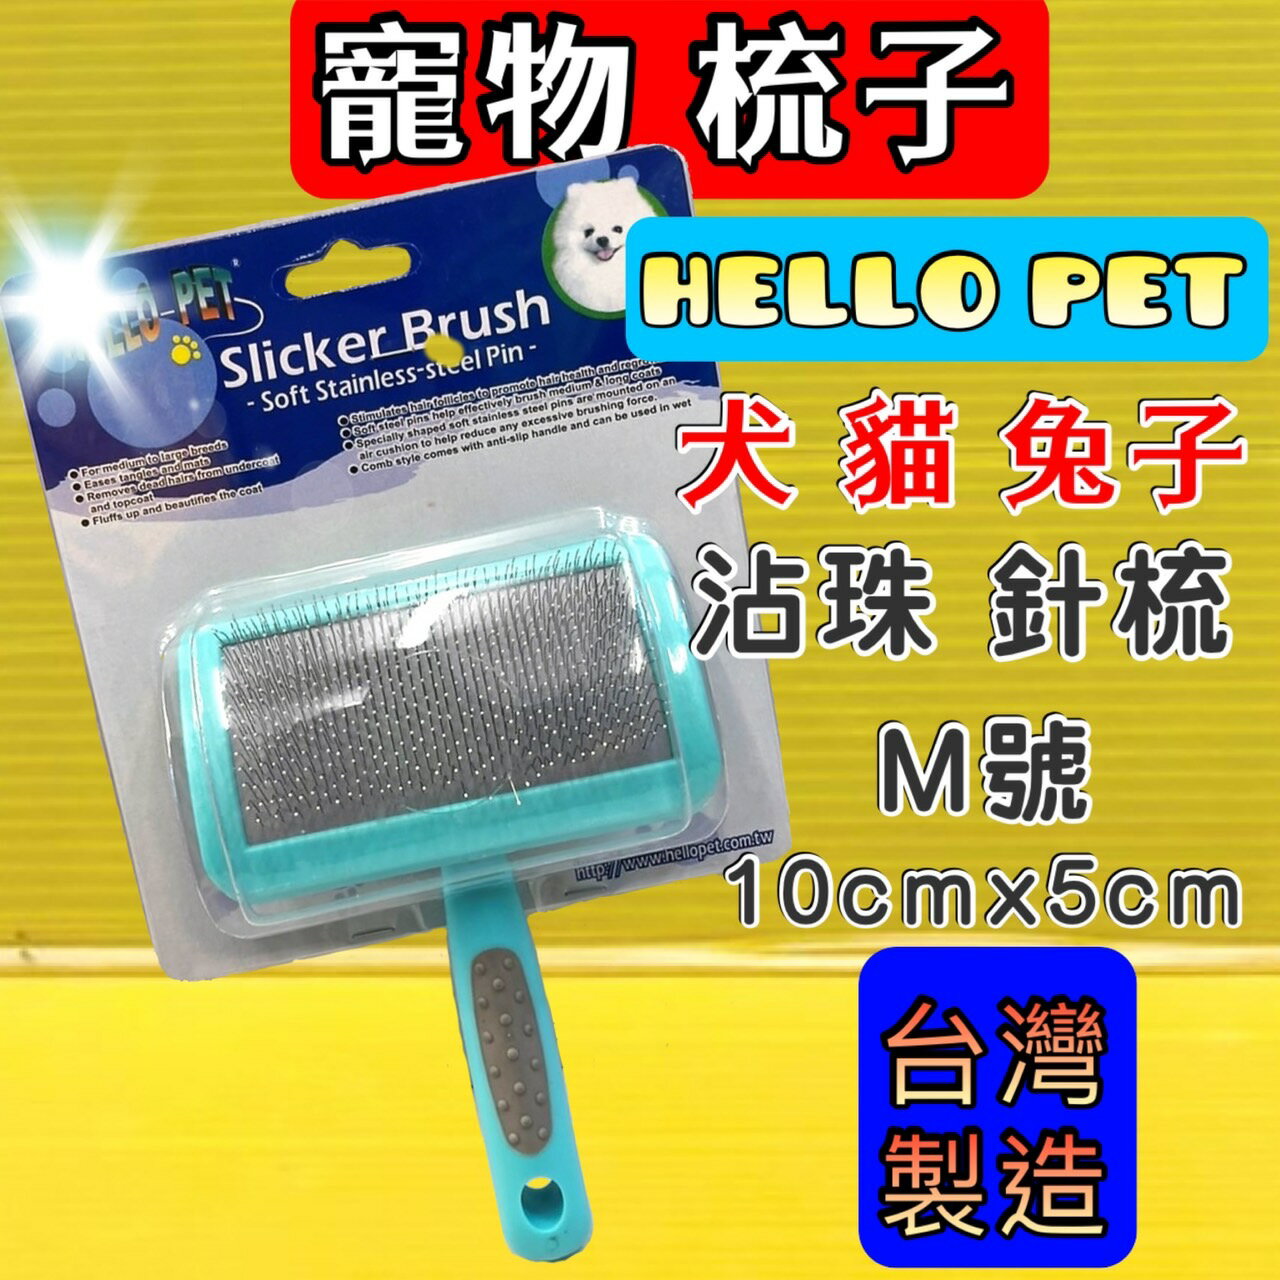 ✪四寶的店n✪附發票~沾珠 軟針 針梳➤梳面寬約10x 5cm M號➤HELLO PET 犬 貓 兔 台灣製 哈囉佩特